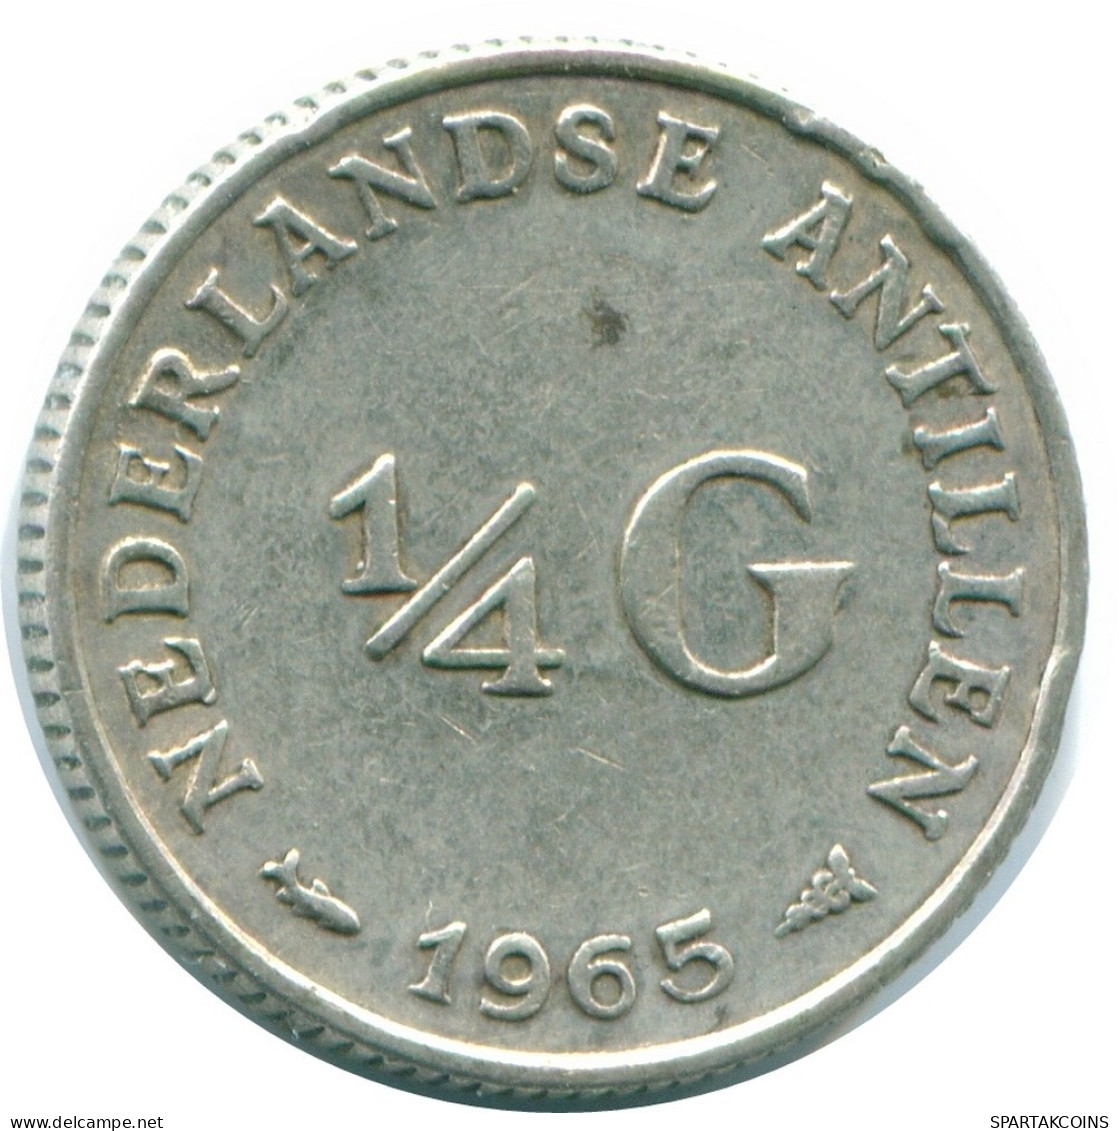 1/4 GULDEN 1965 NIEDERLÄNDISCHE ANTILLEN SILBER Koloniale Münze #NL11293.4.D.A - Antilles Néerlandaises